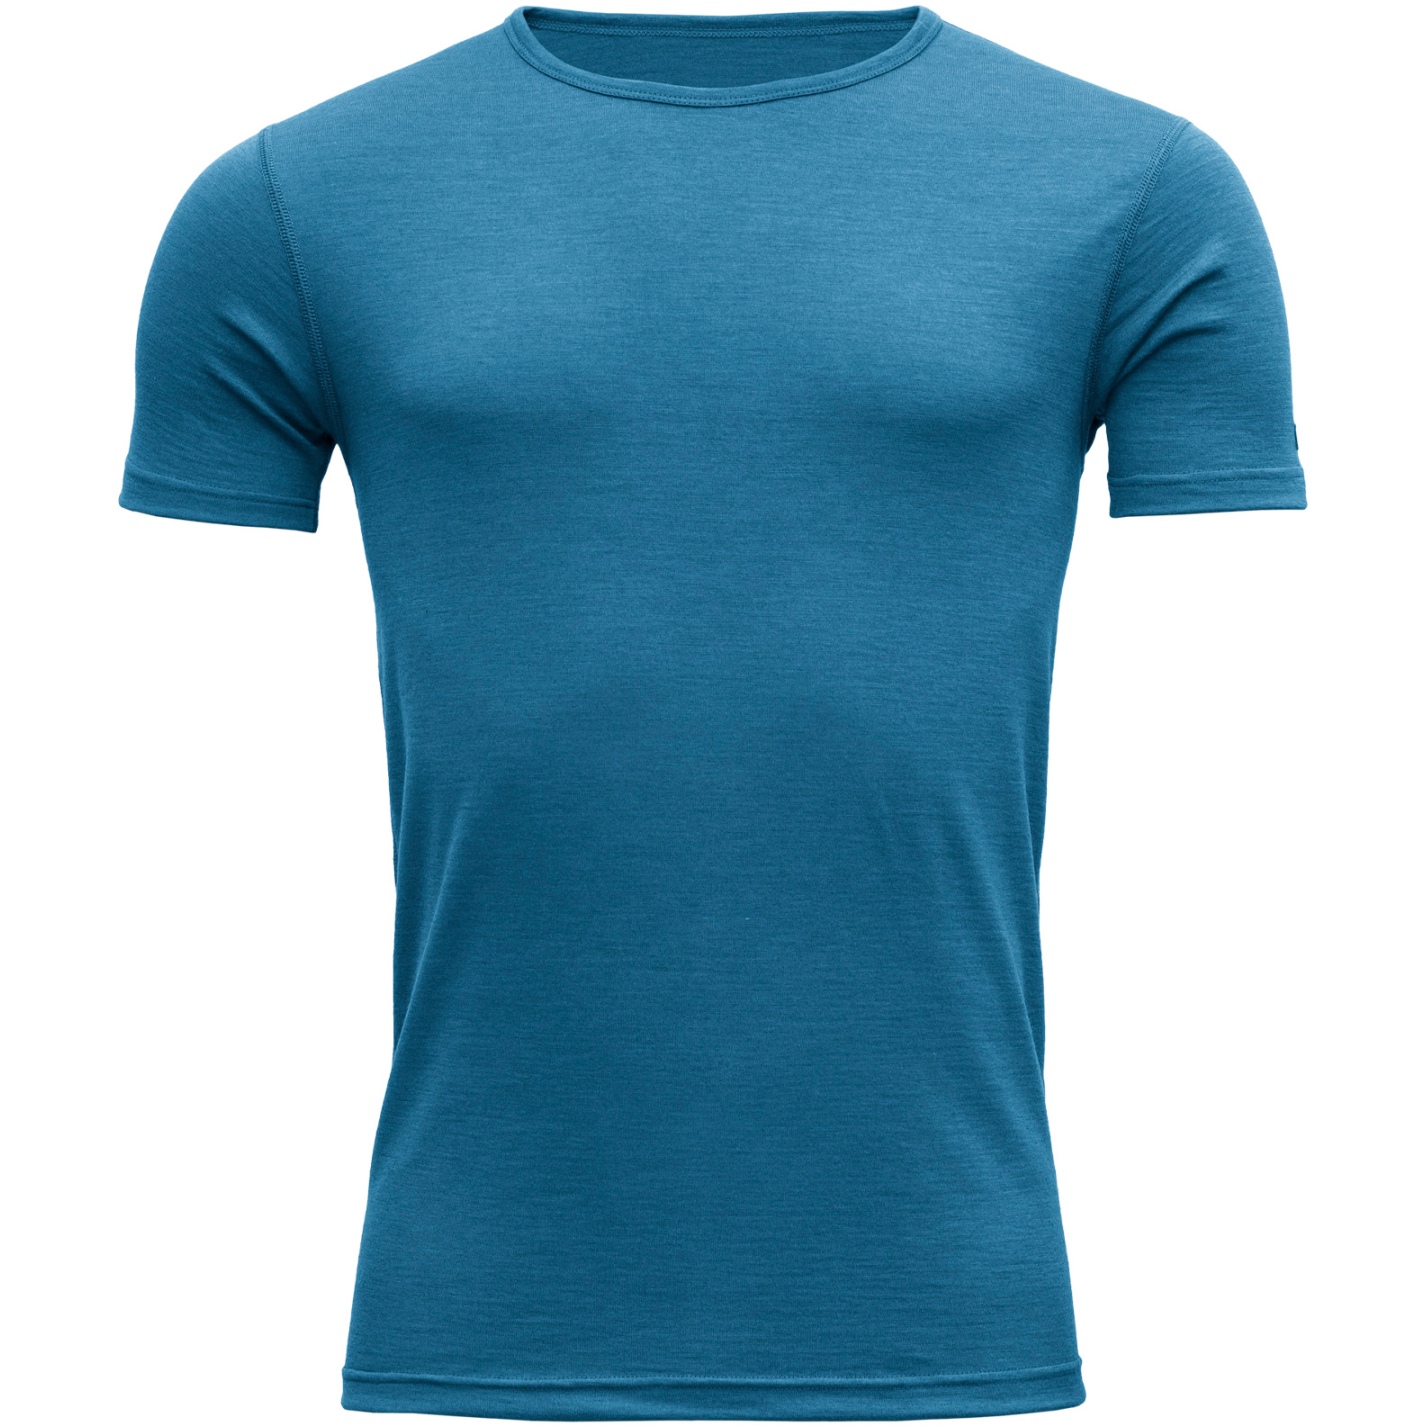 Produktbild von Devold Breeze Merino 150 T-Shirt Herren - 258 Blue Melange